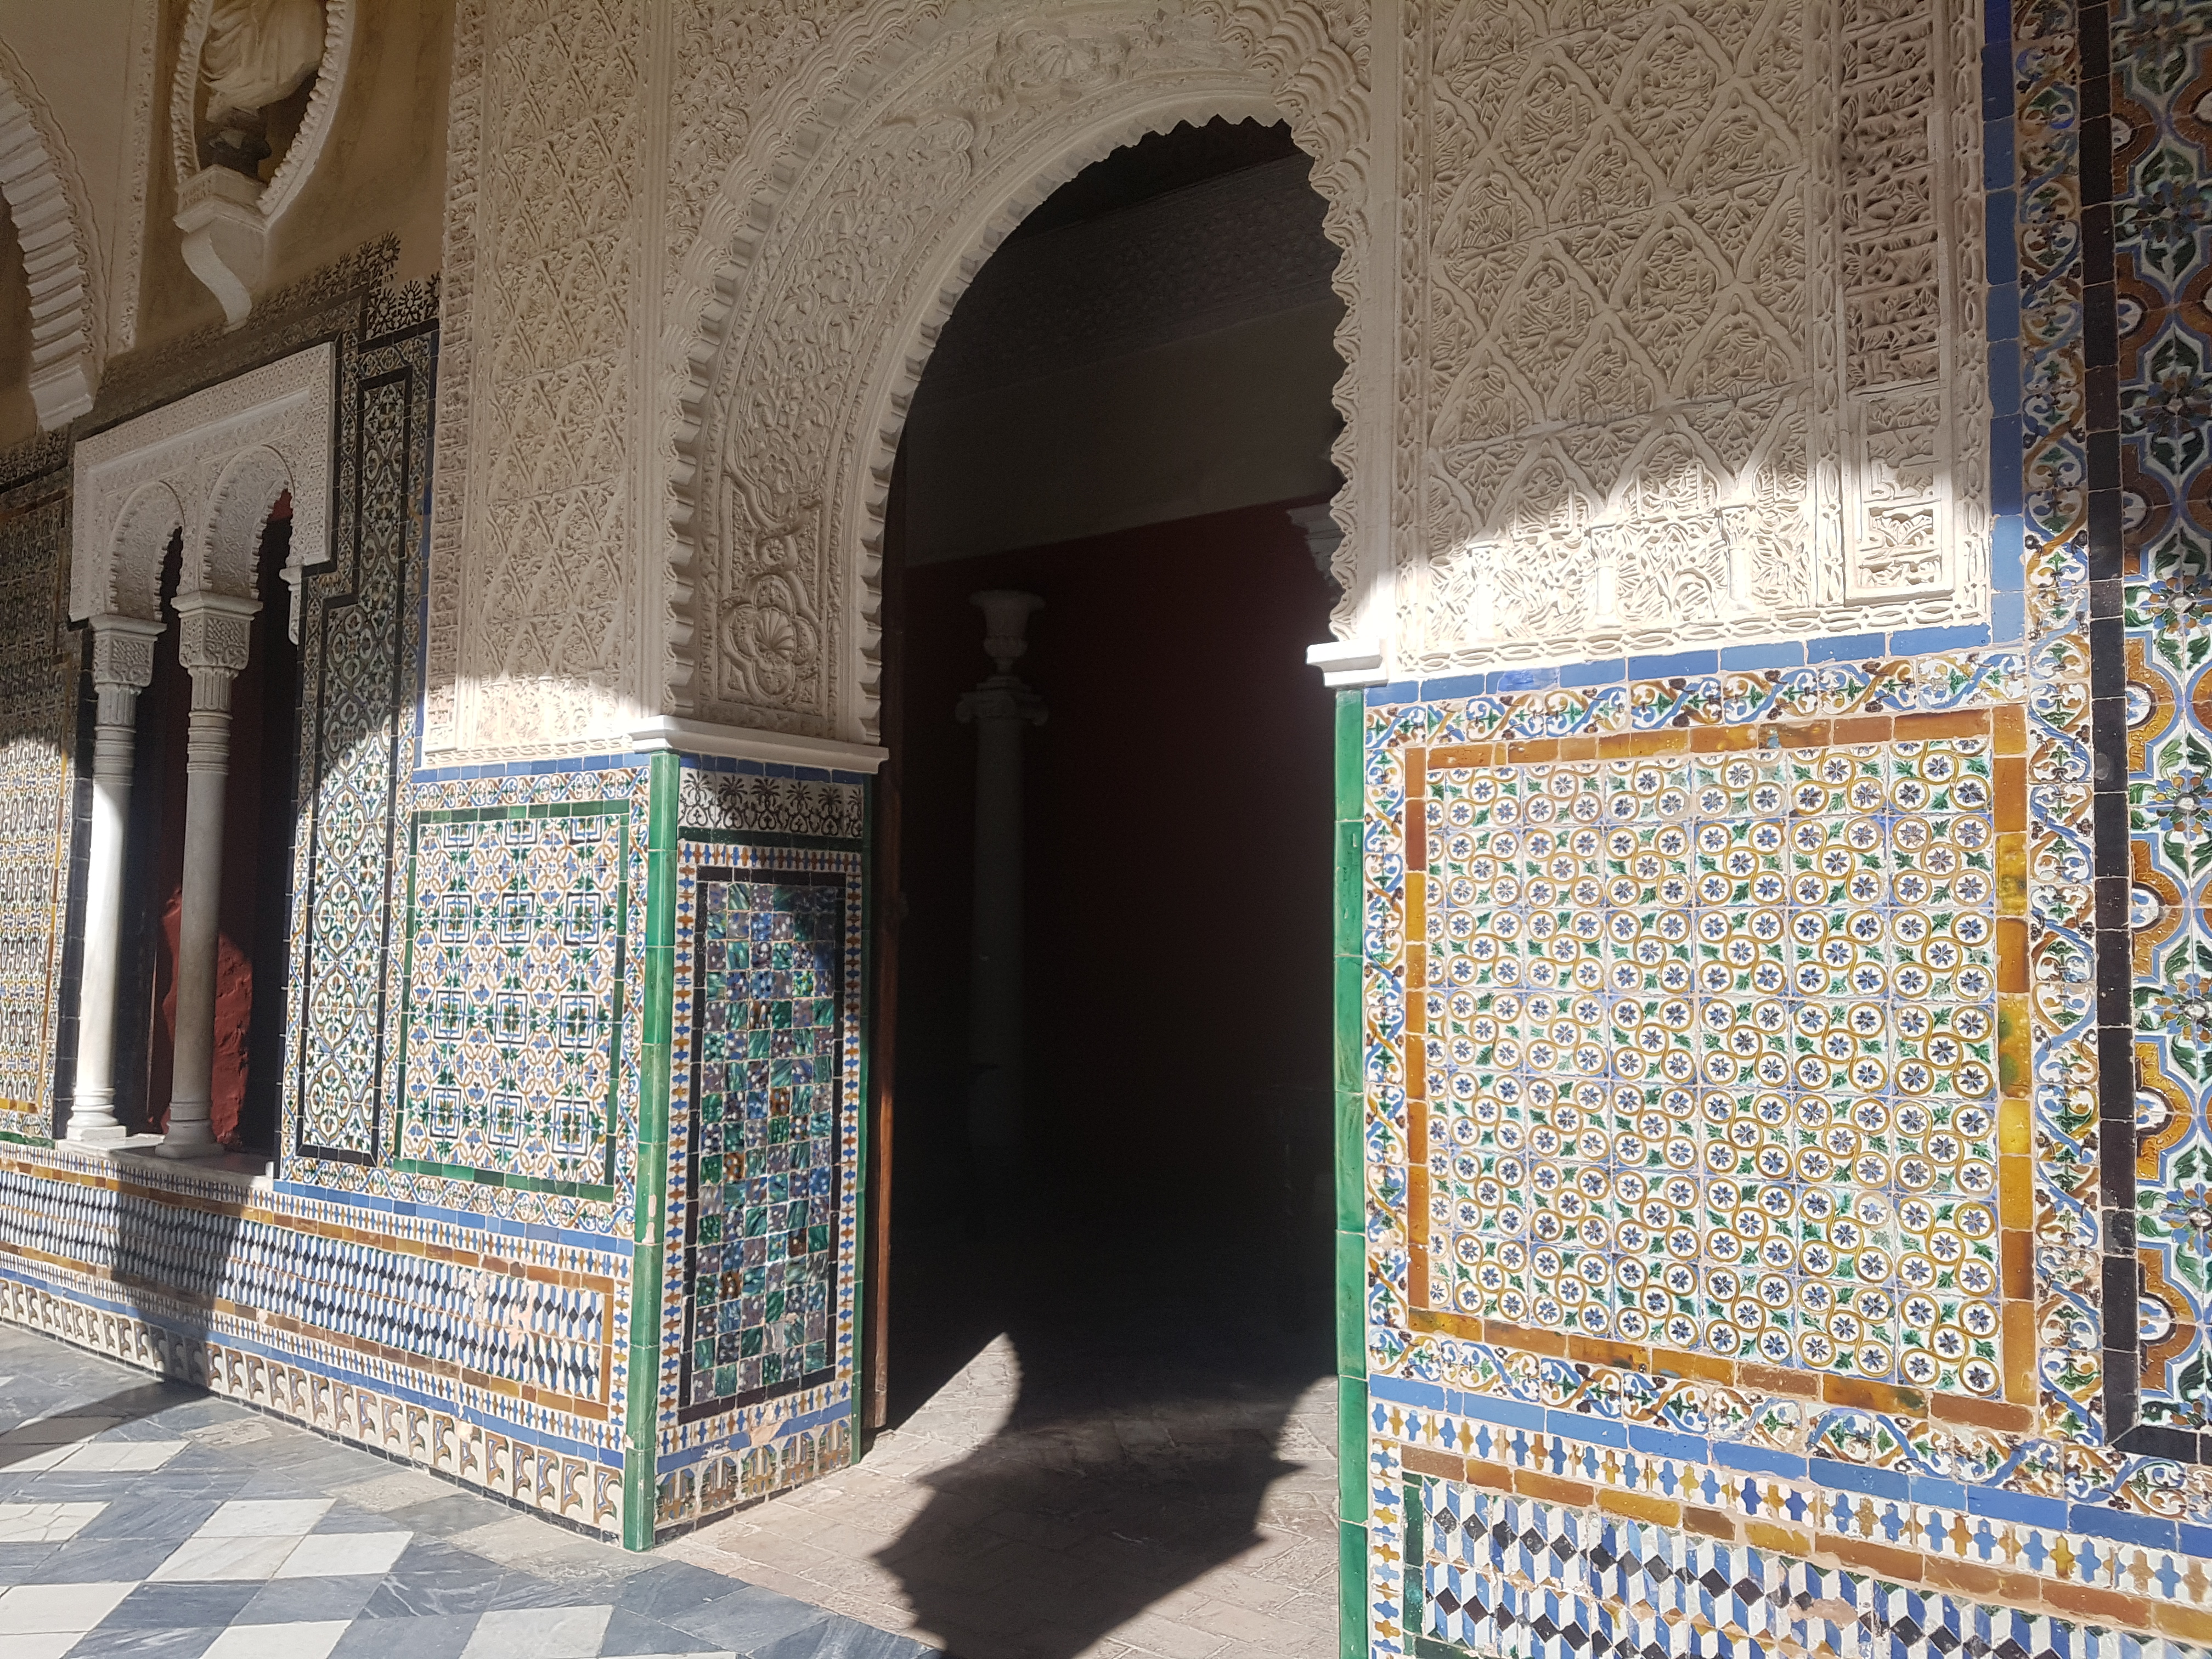 Preciosos azulejos de colores de las paredes de uno de los patios interiores de la Casa Pilatos.